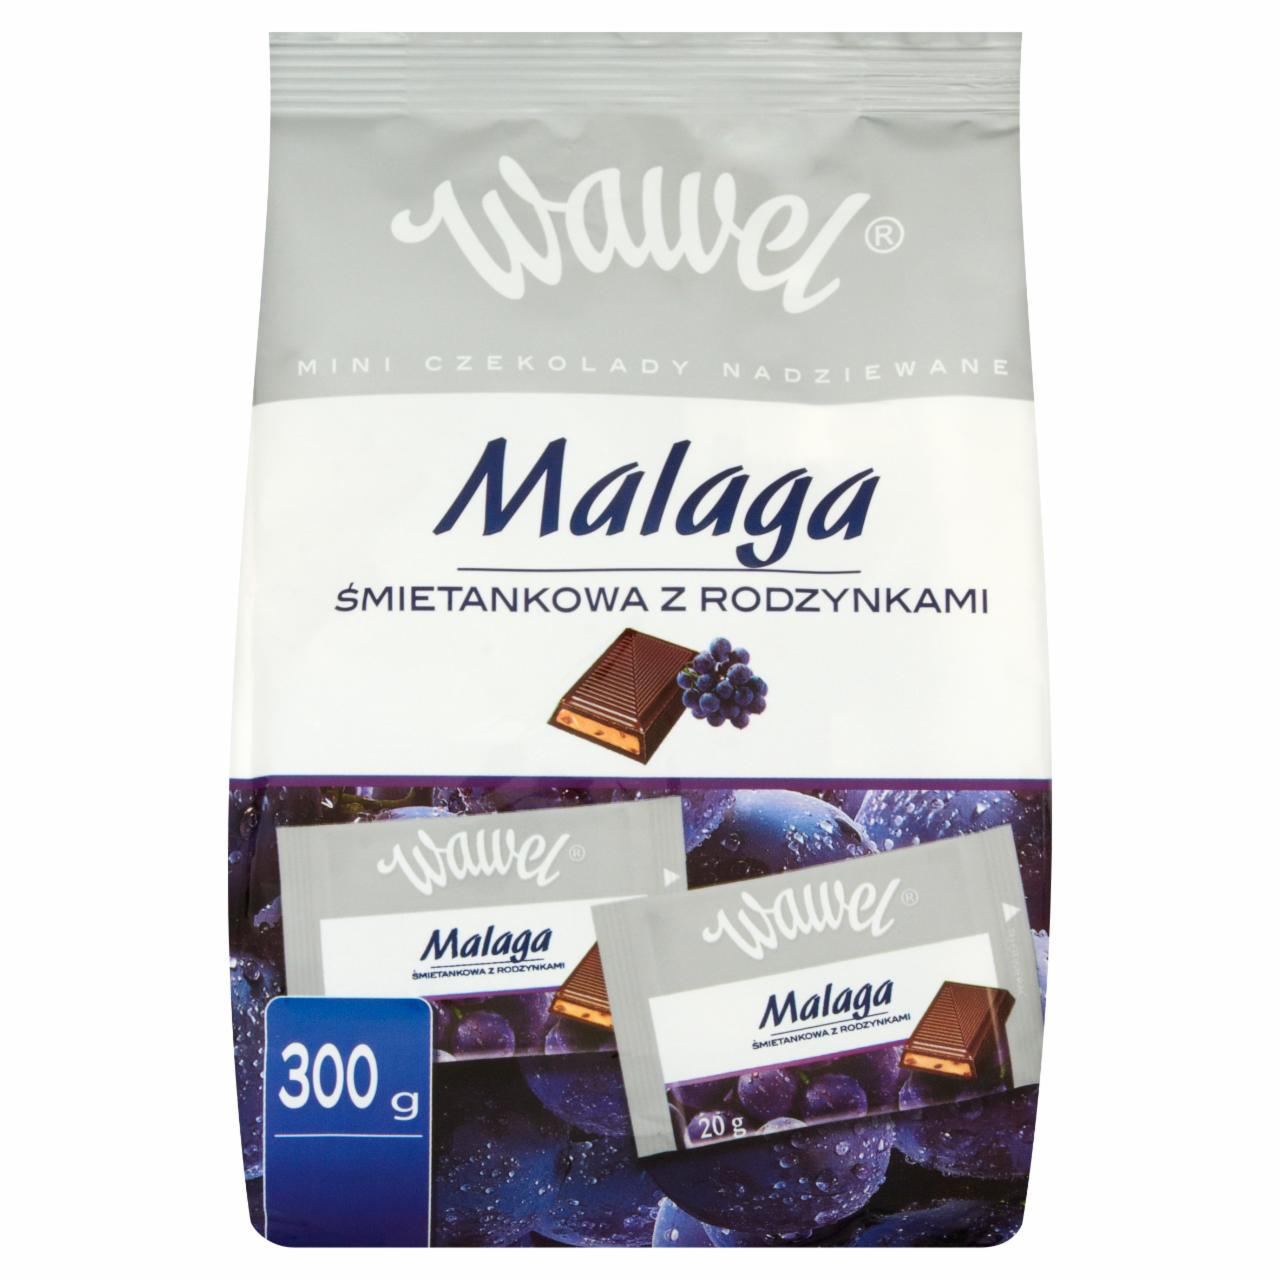 Zdjęcia - Wawel Malaga śmietankowa z rodzynkami Mini czekolady nadziewane 300 g